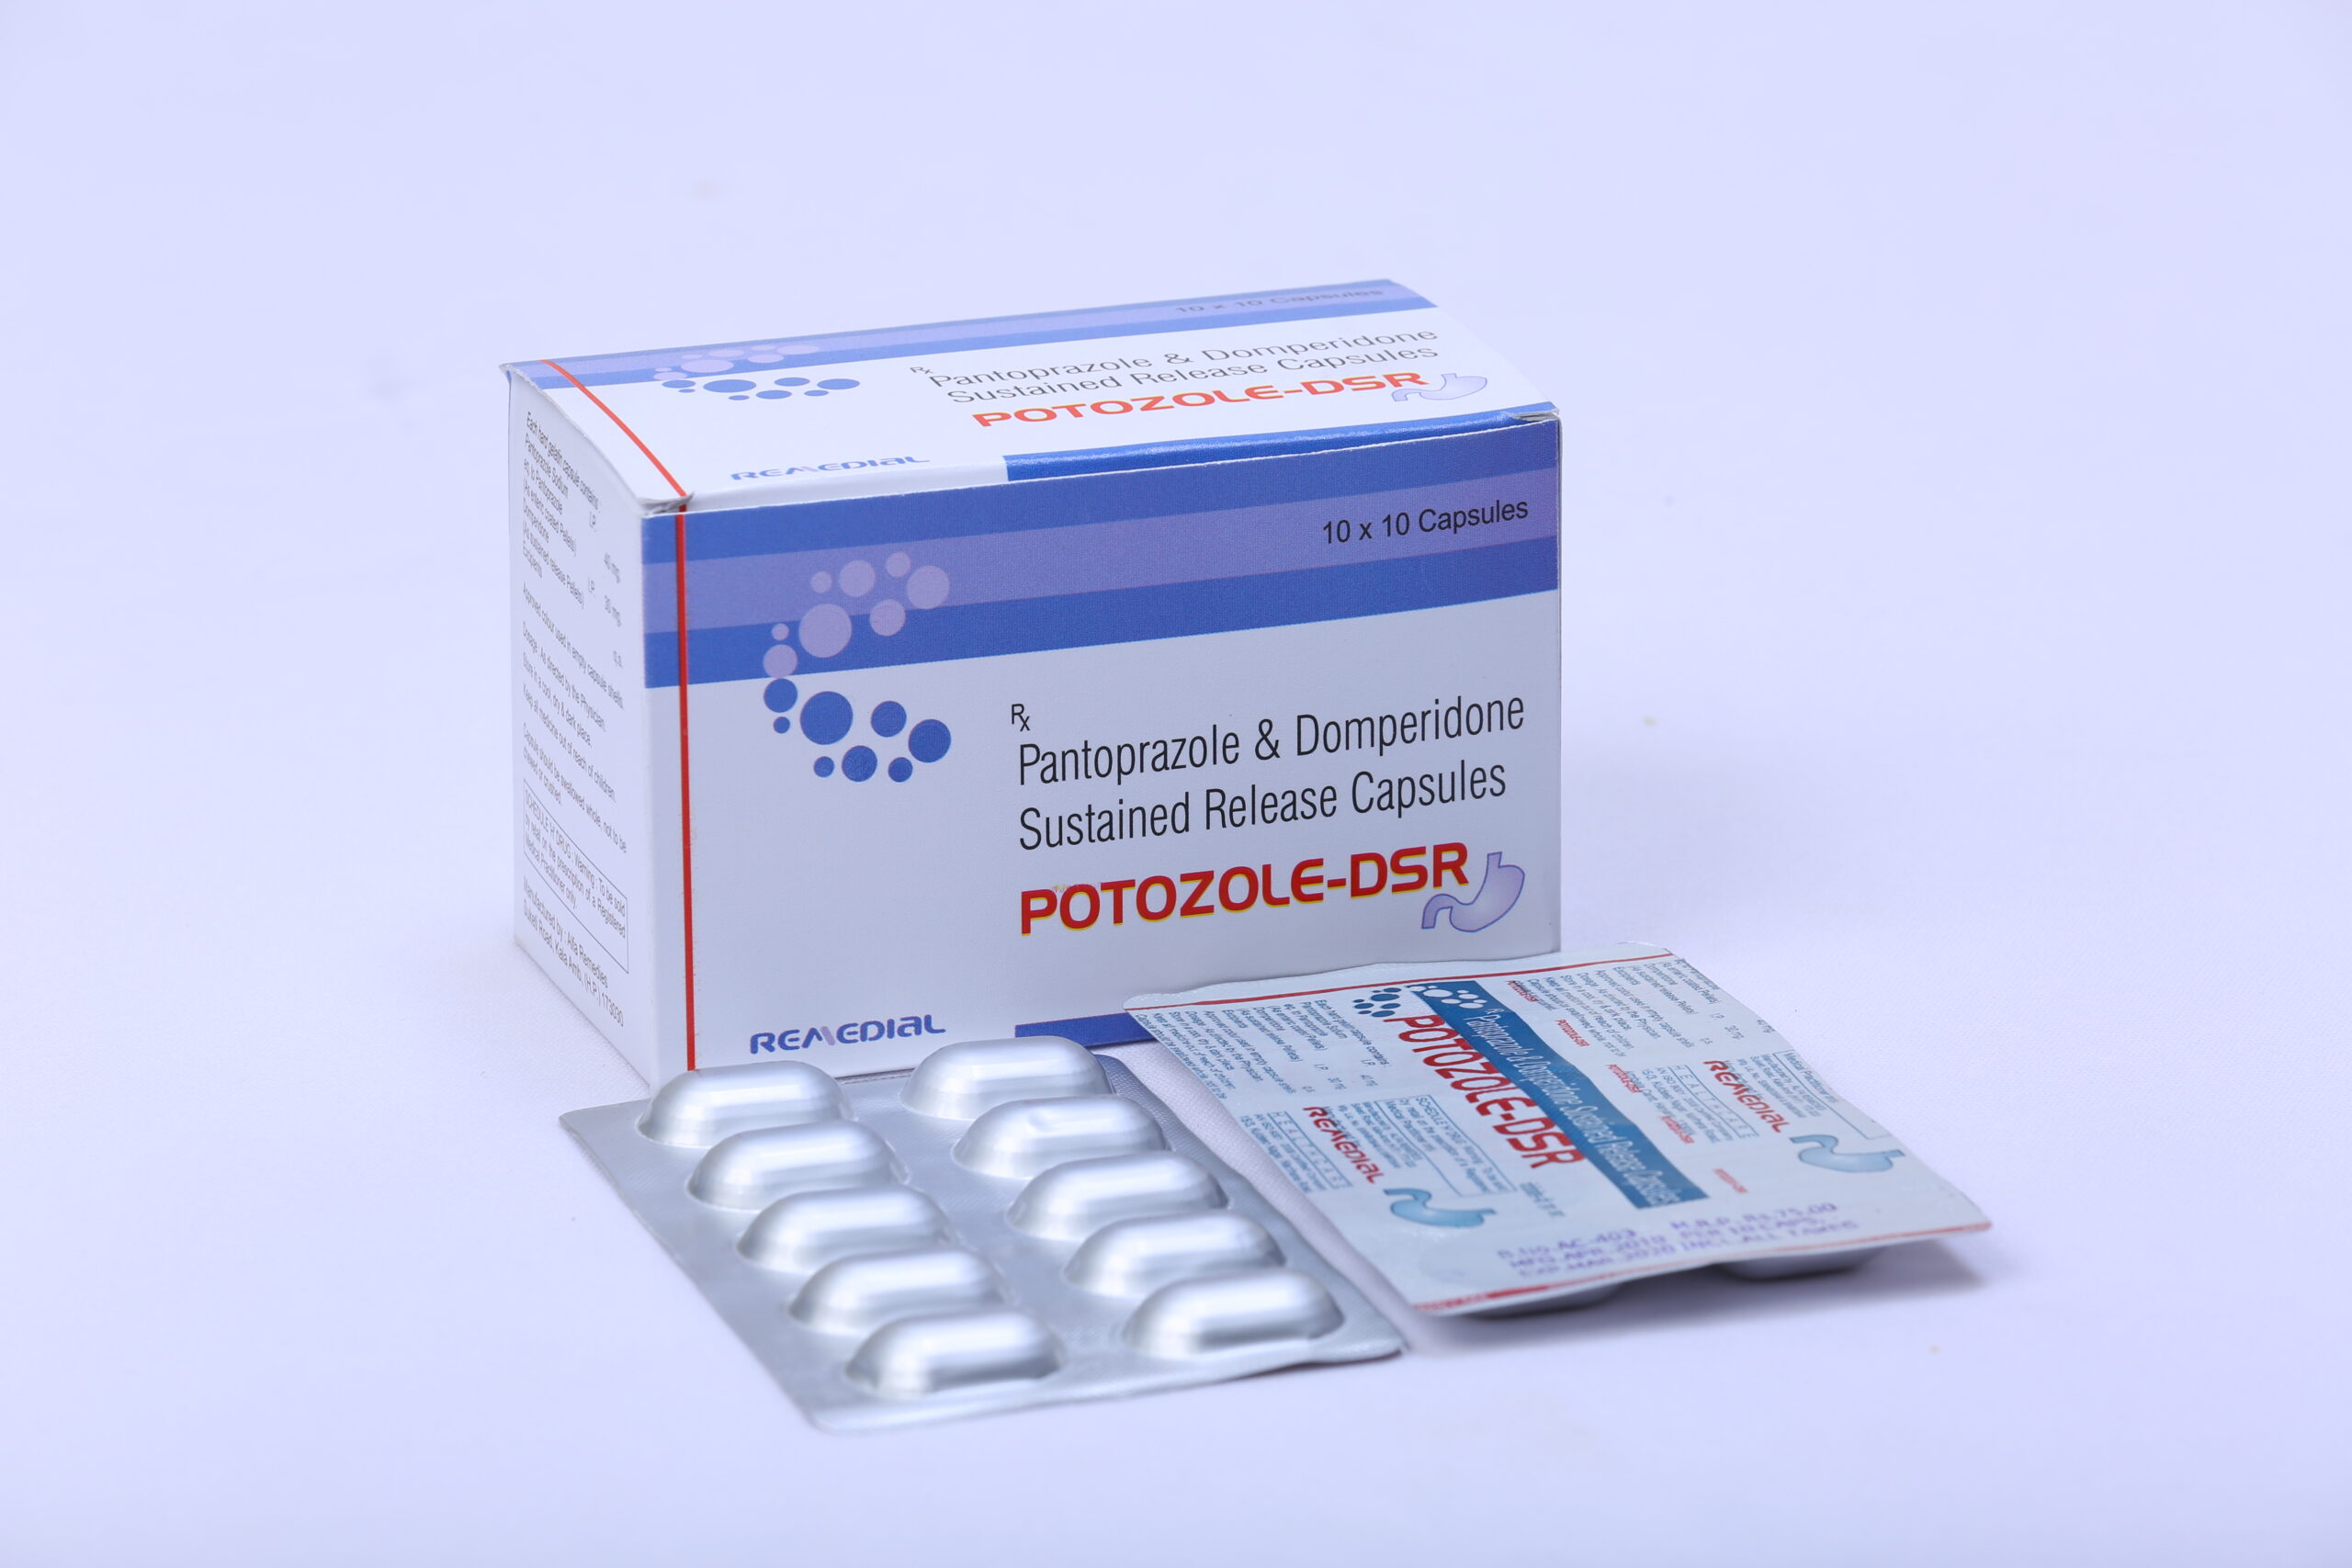 POTOZOLE-DSR (Pantoprozole 40mg + Domperidone 30mg)